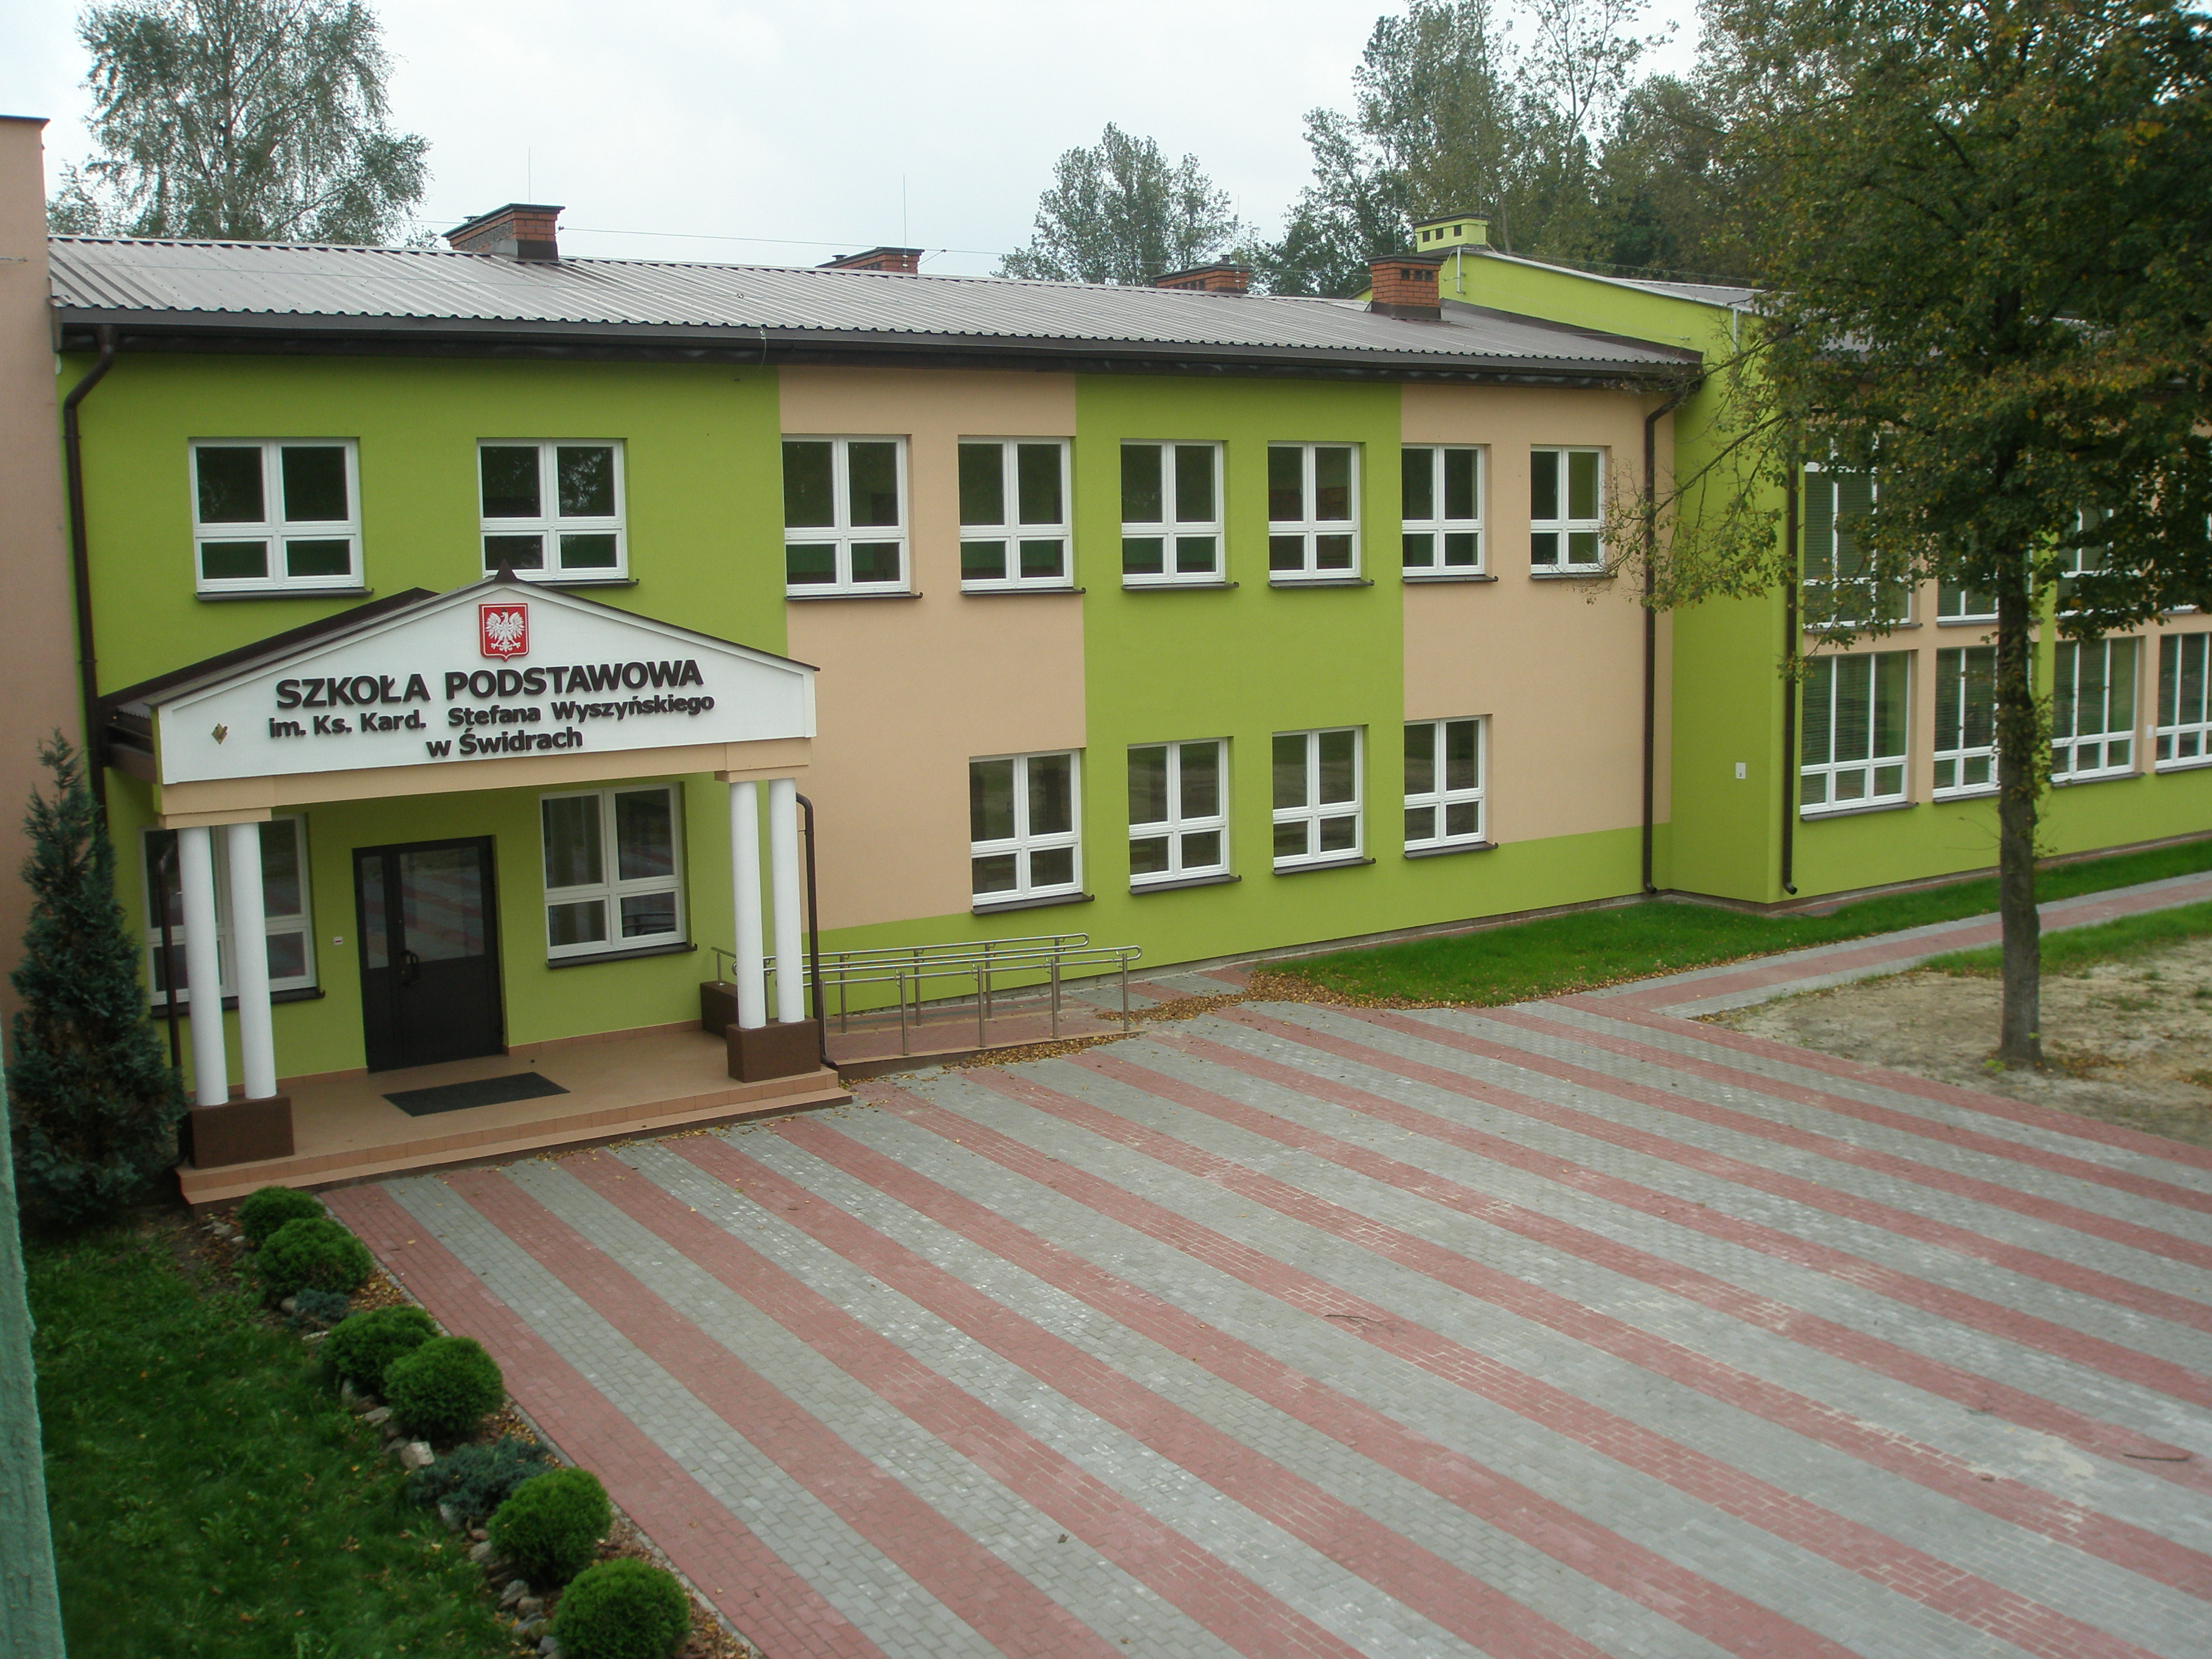 Szkoła Podstawowa w Świdrach - 2010 r.